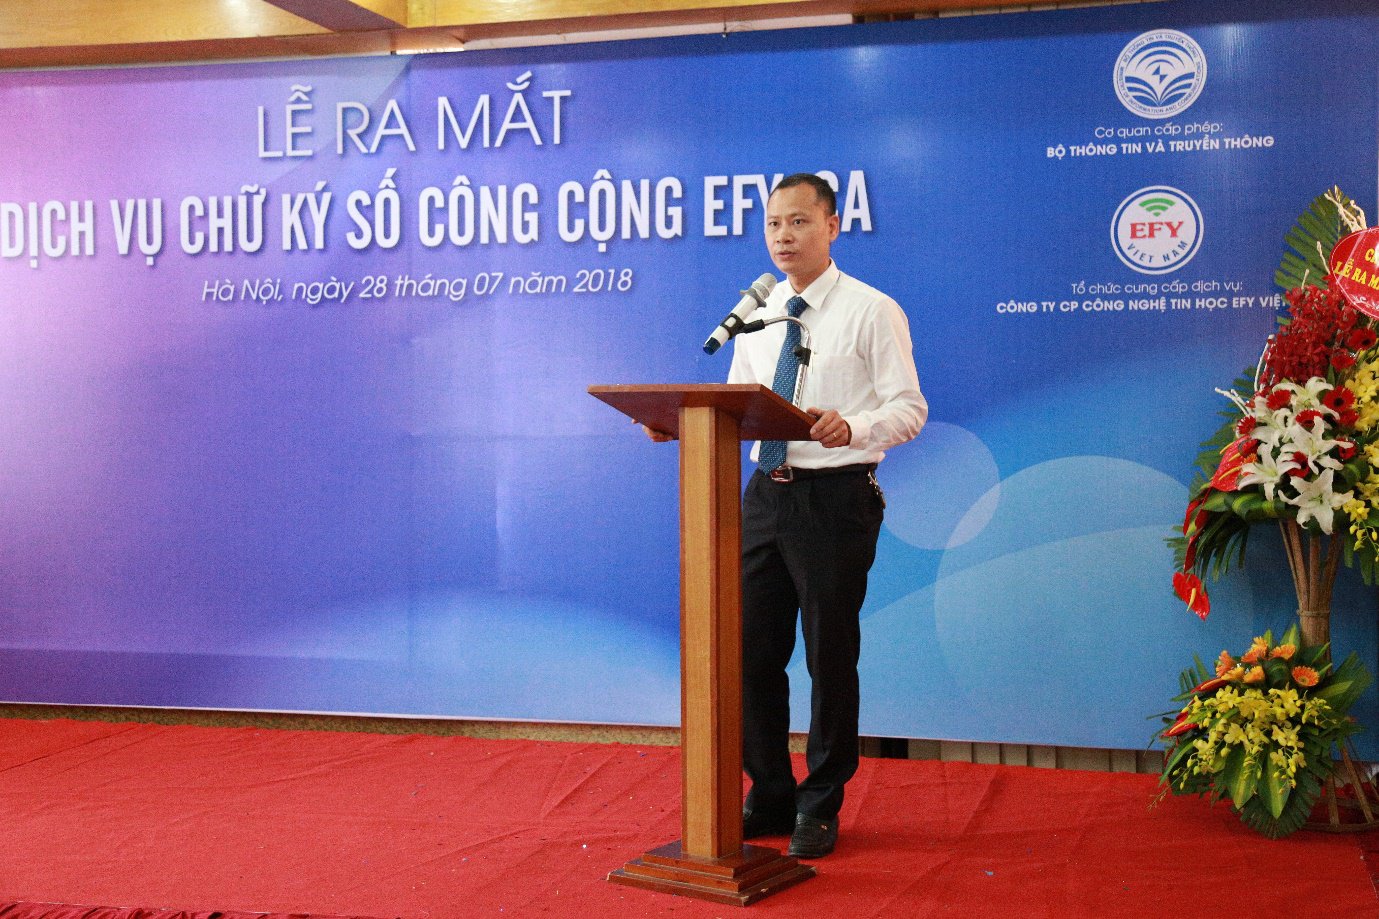 EFY Việt Nam chính thức ra mắt dịch vụ chữ ký số công cộng EFY-CA